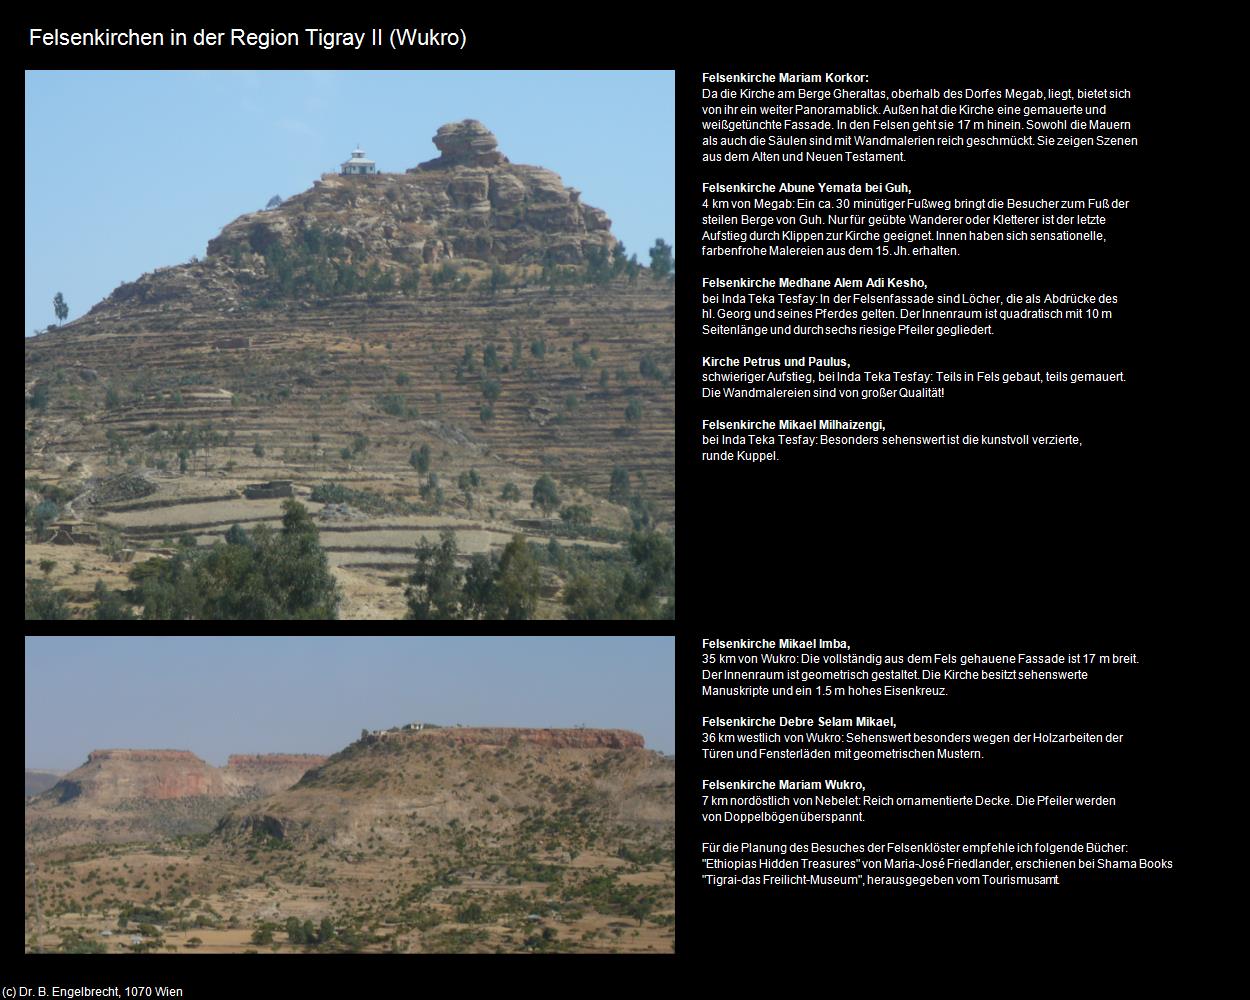 Felsenkirchen in der Region Tigray II (Route Aksum-Mekelle) in Äthiopien